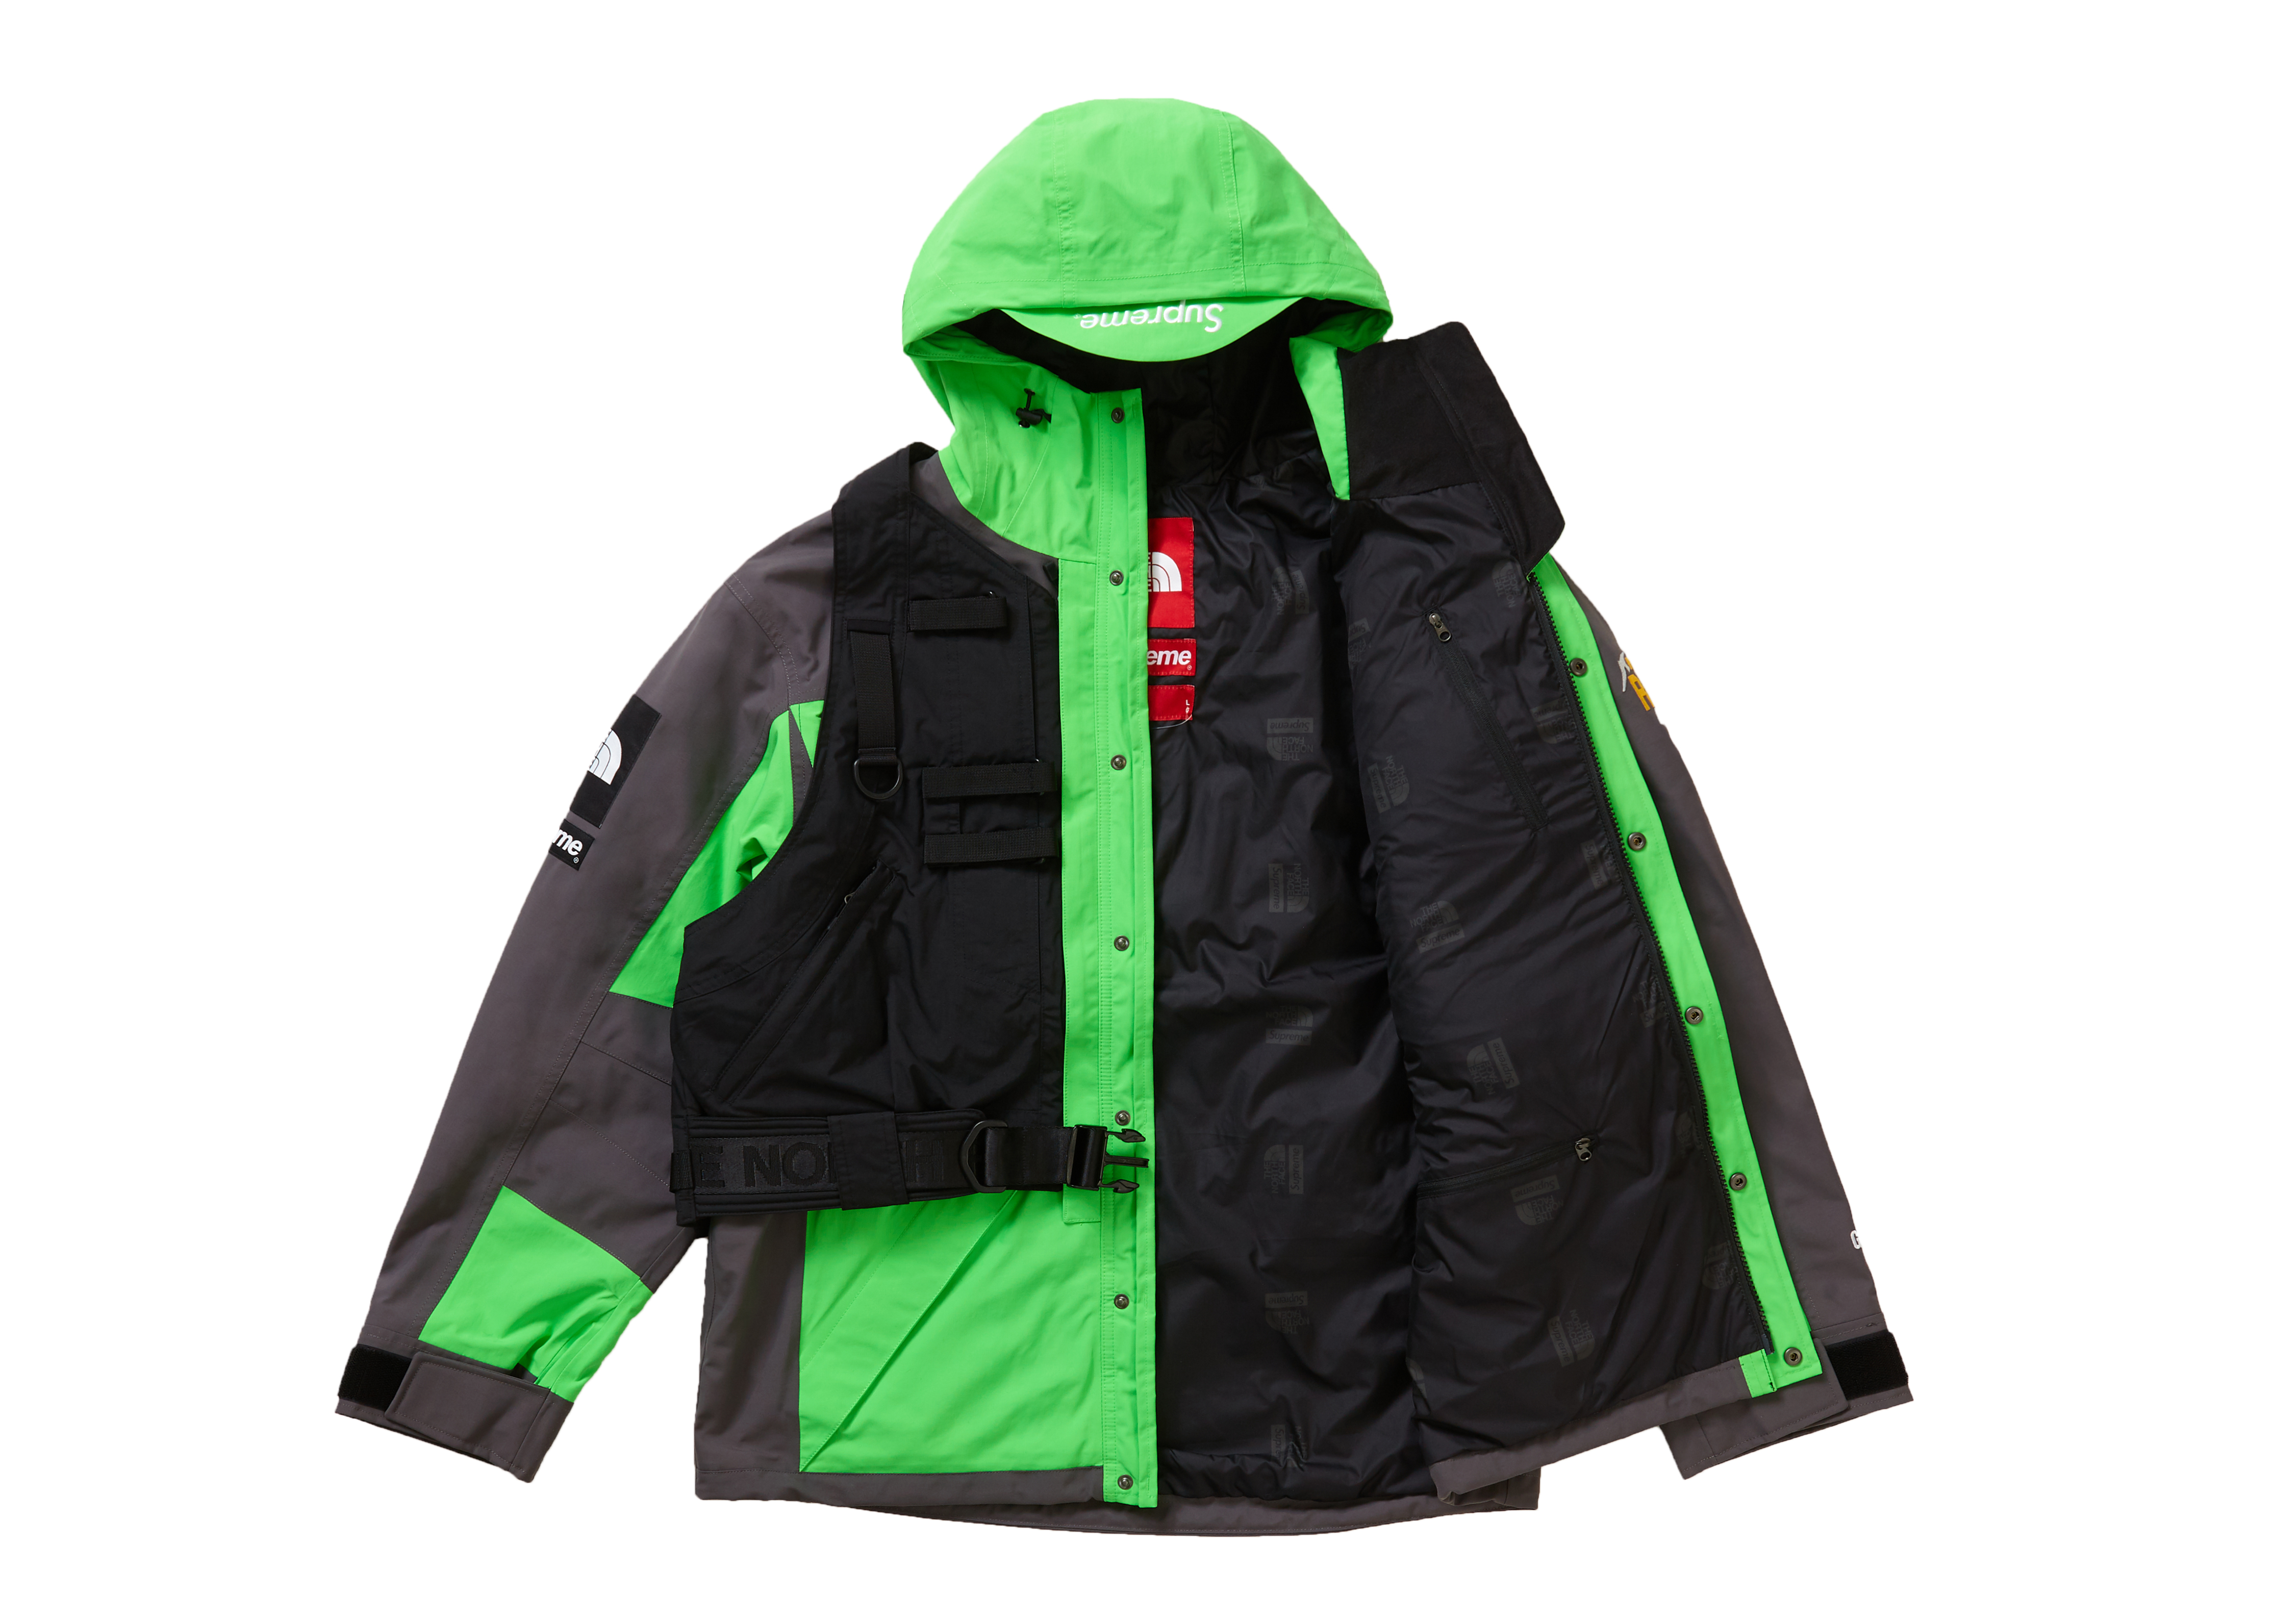 18,410円Supreme The North Face RTG Jacket Green